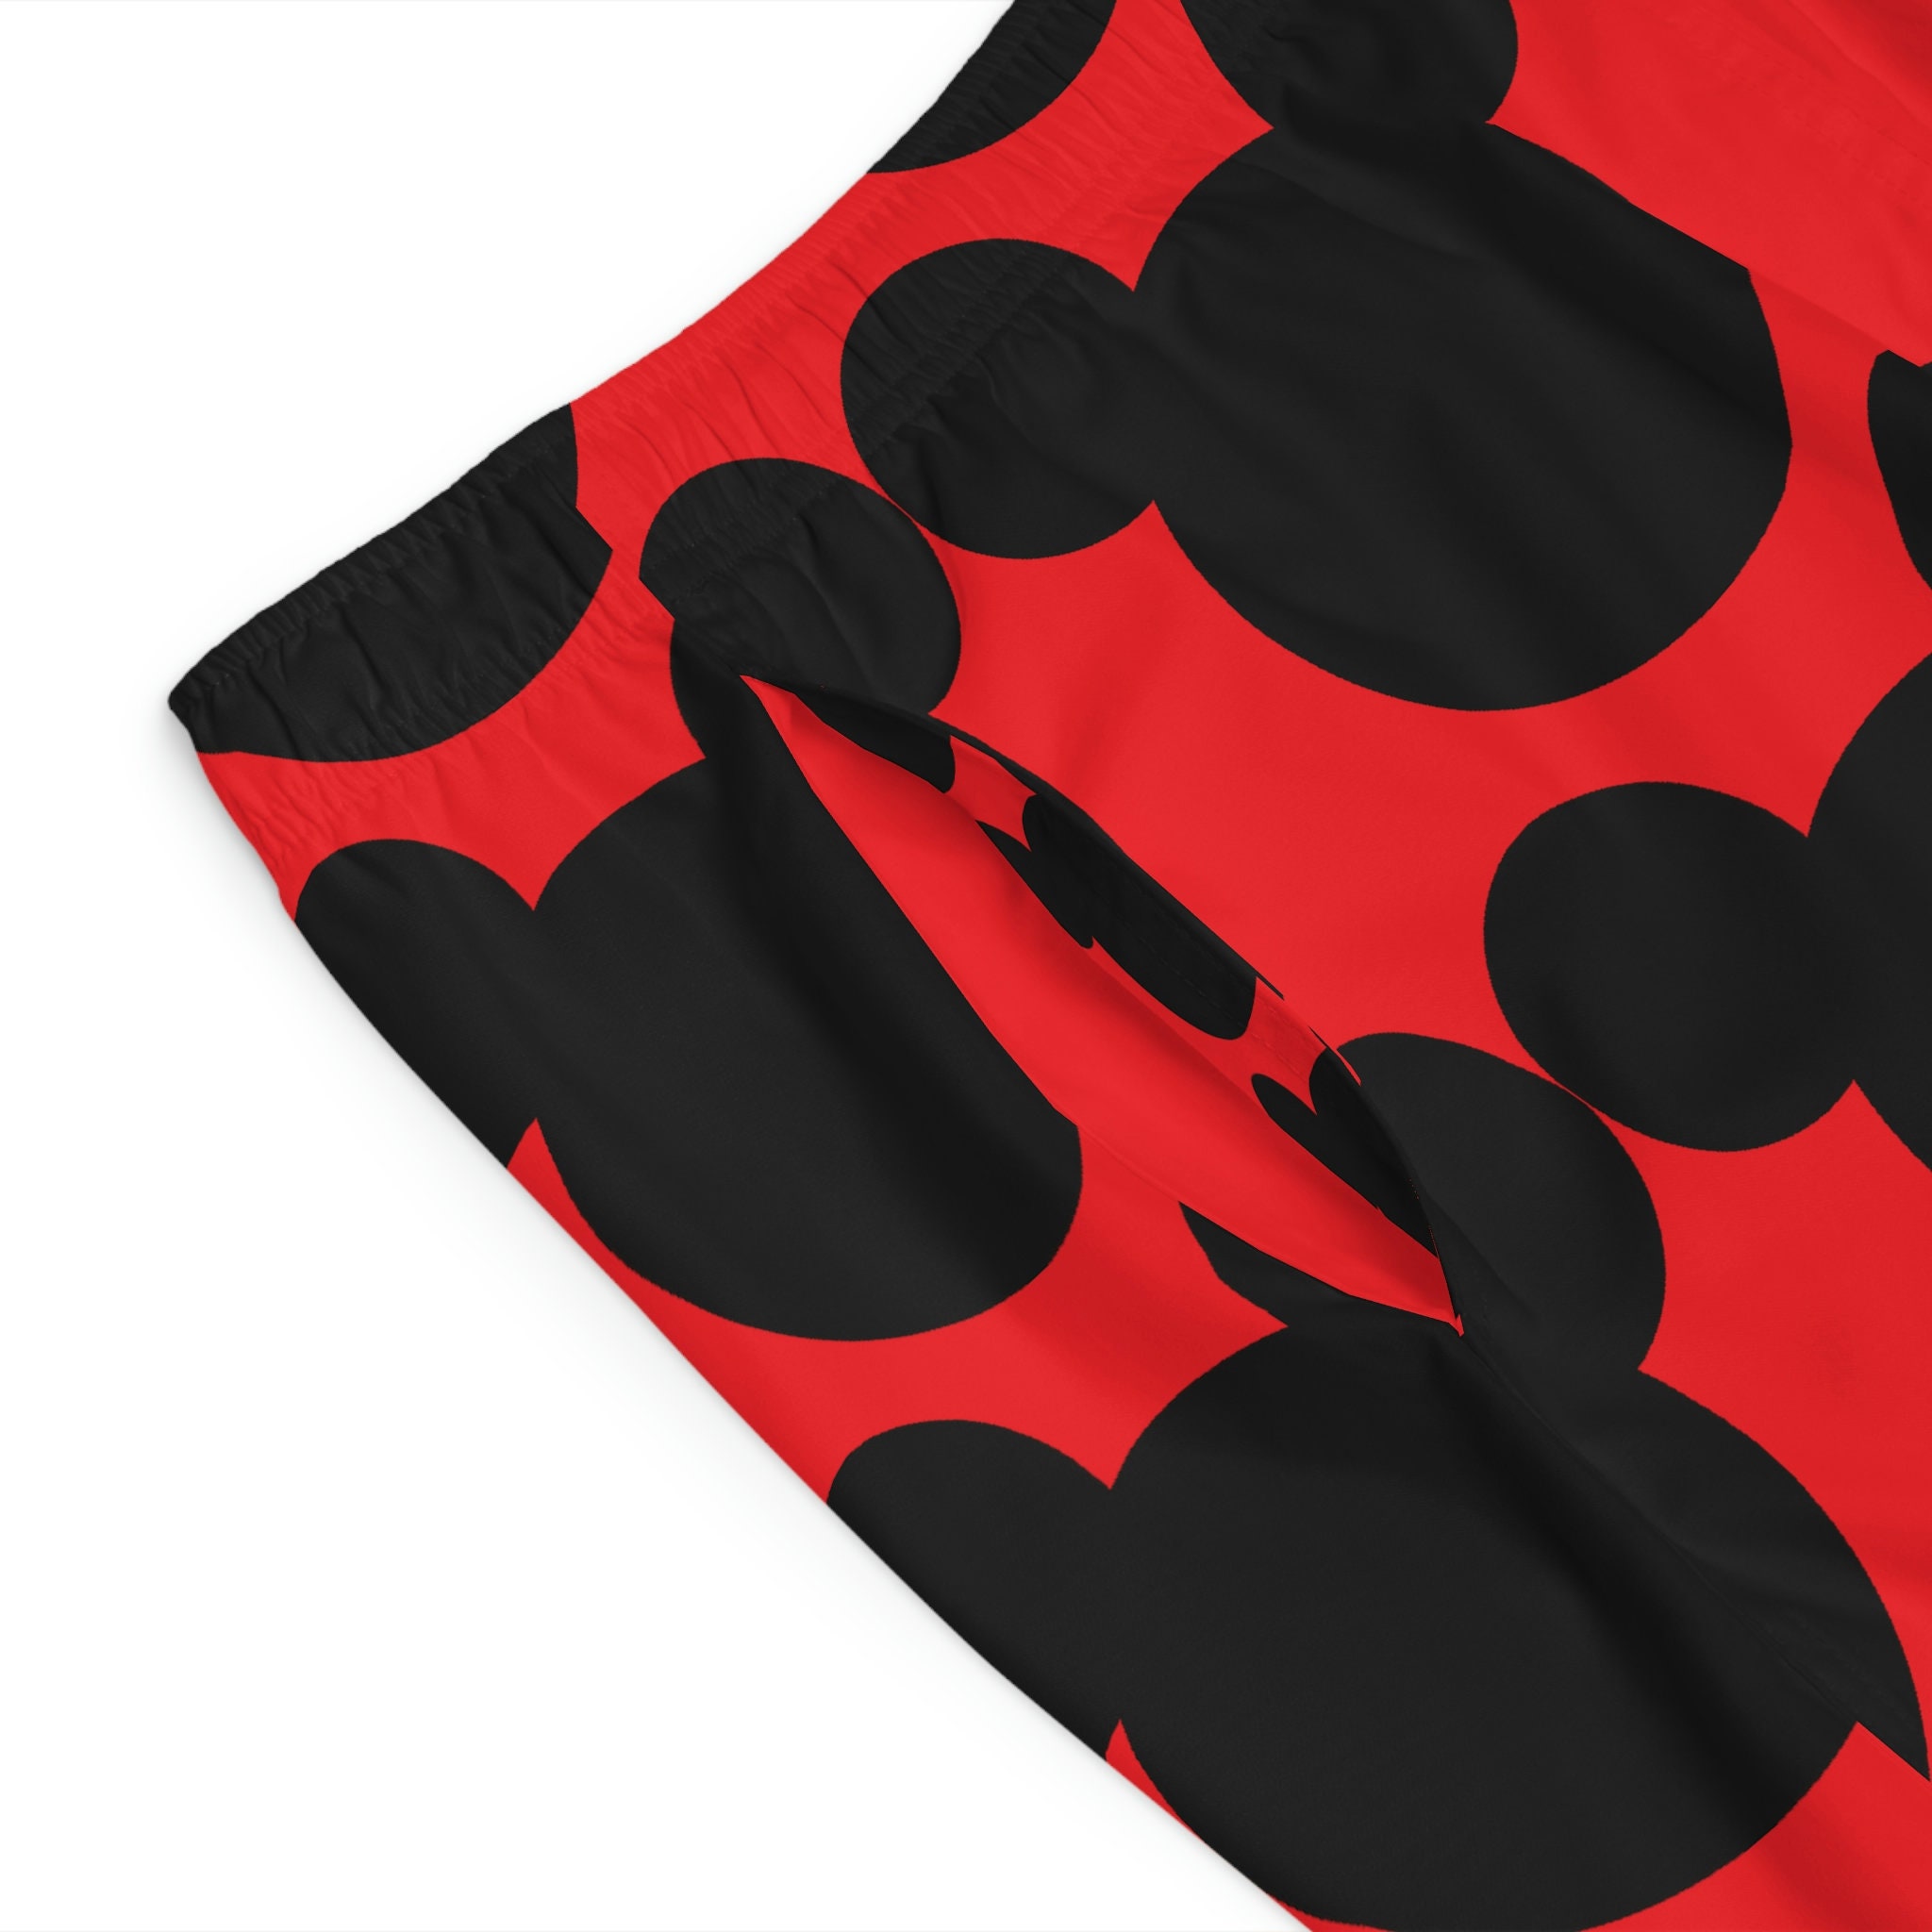 Mickey Mouse Ears - Swimming Trunks - Disney - Men's Board Shorts